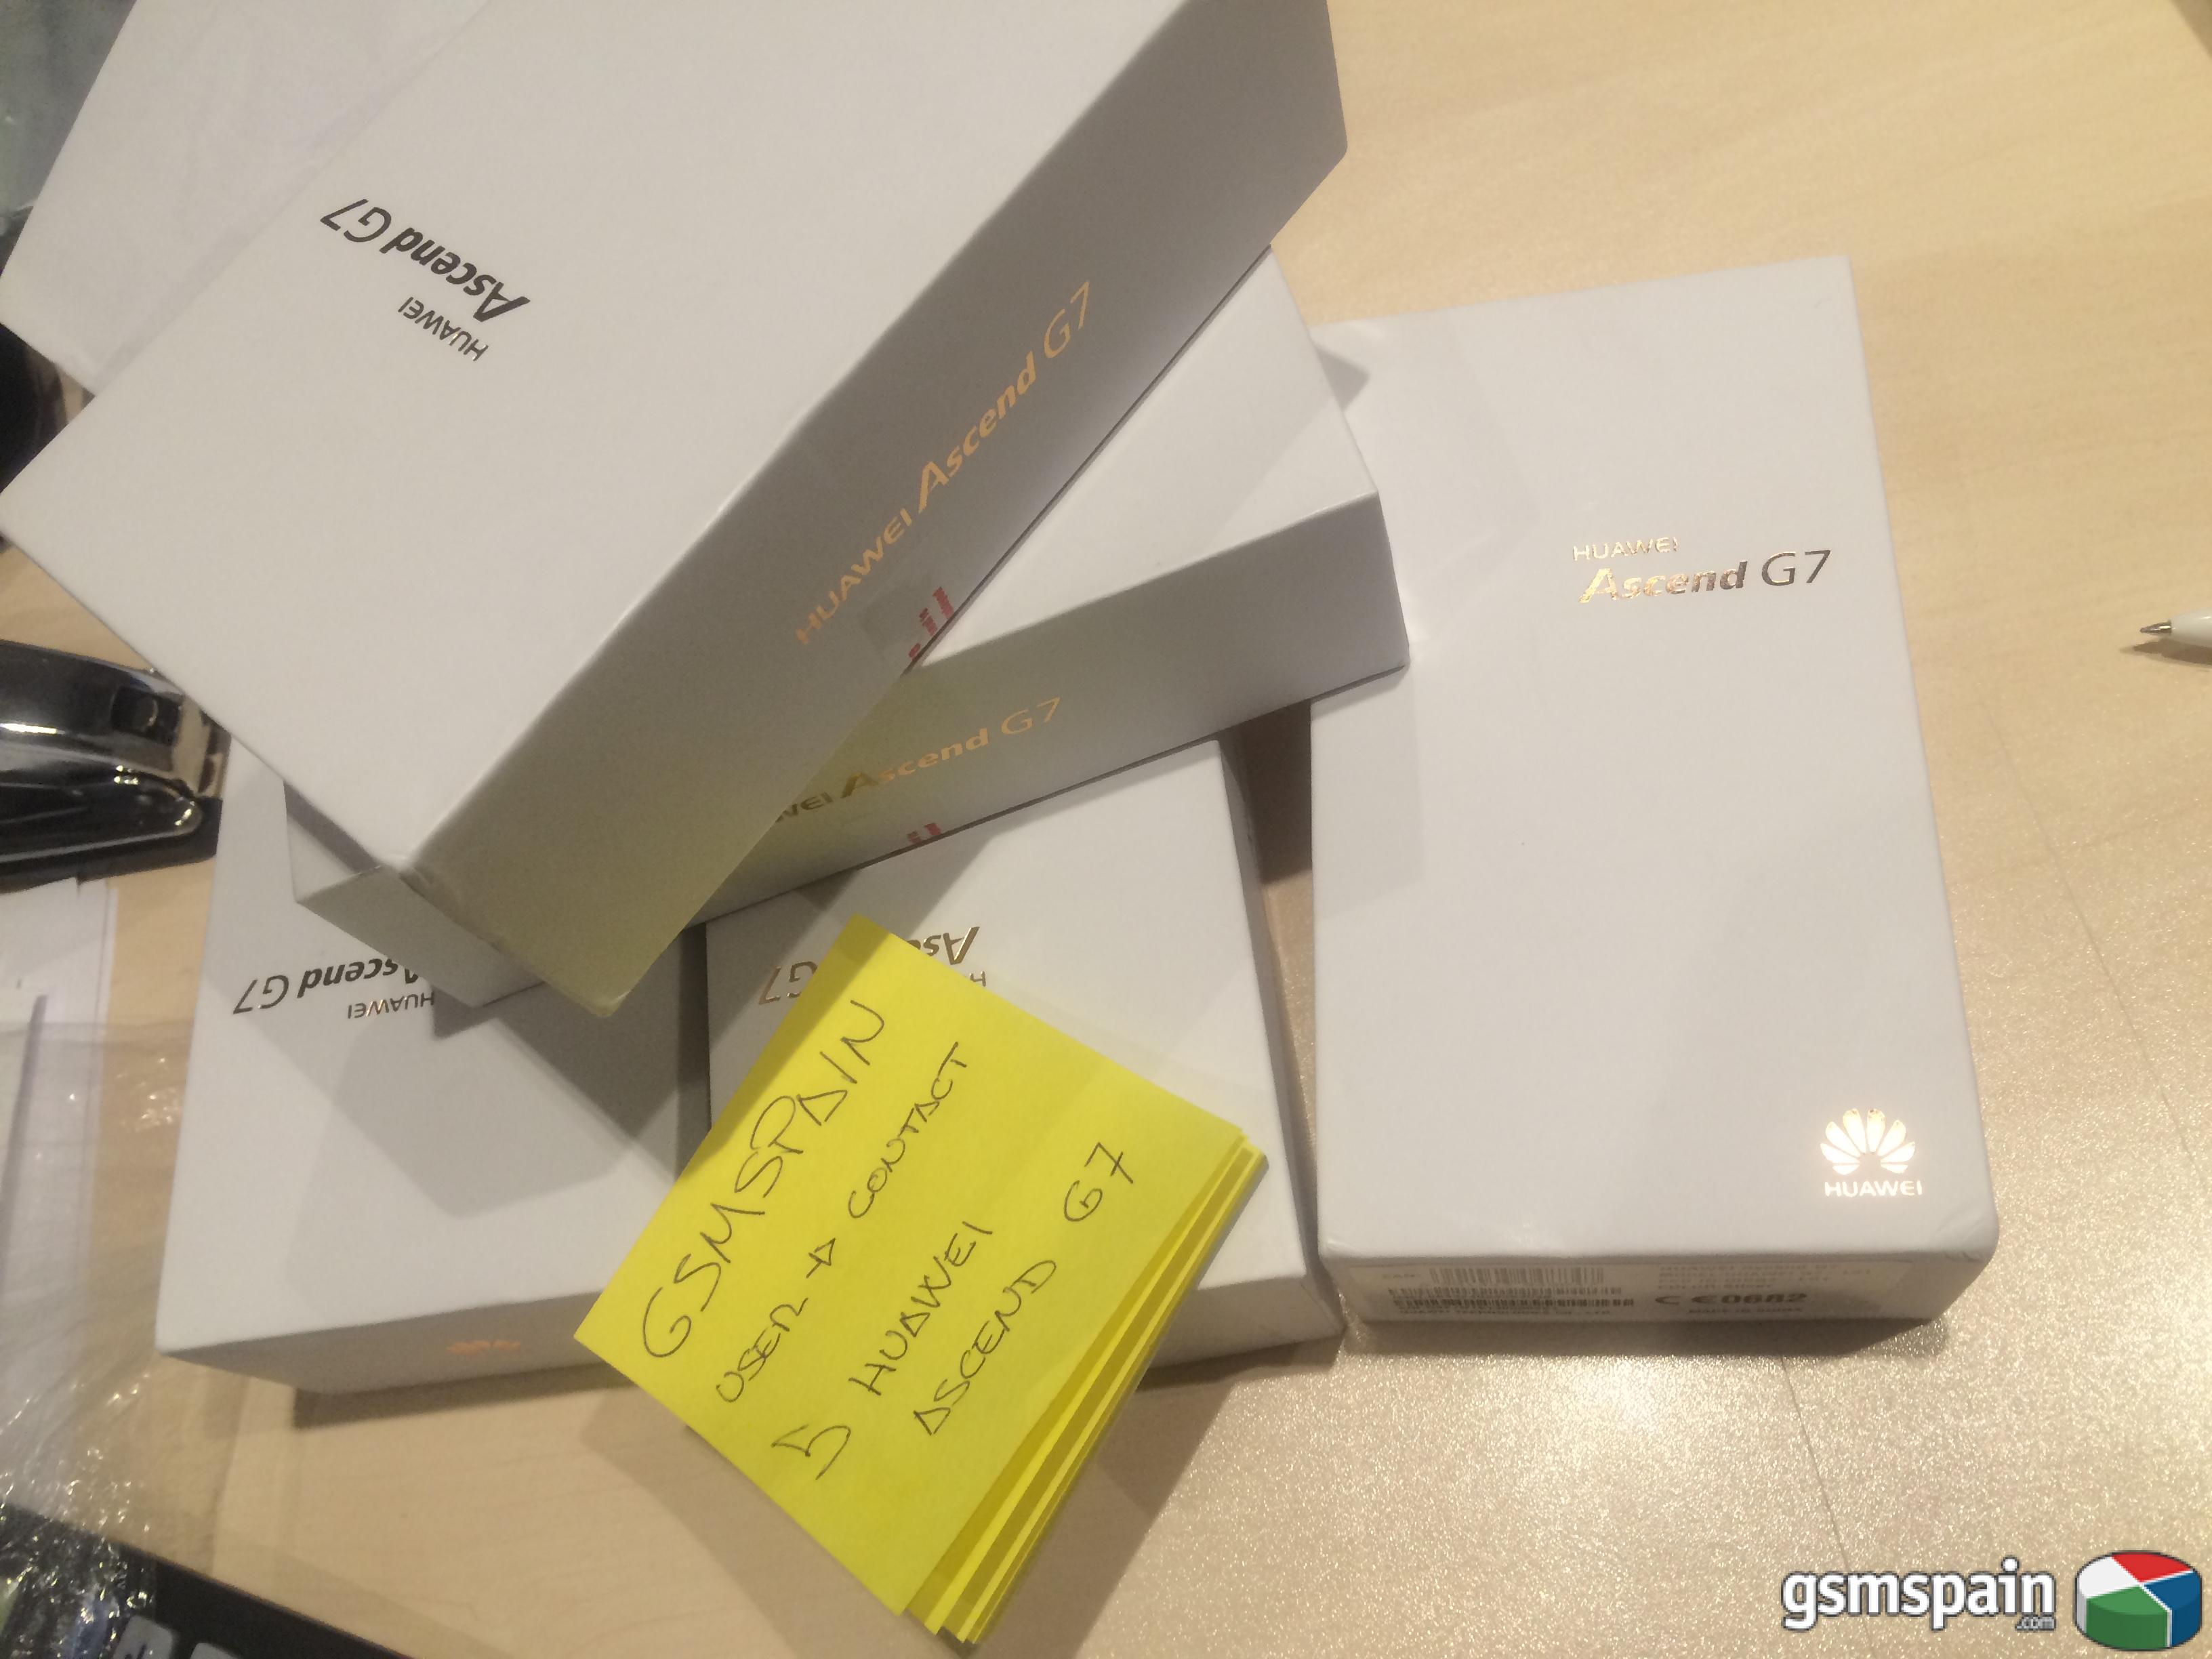 [VENDO] Huawei Ascend G7 libres y precintados - 5 unidades -